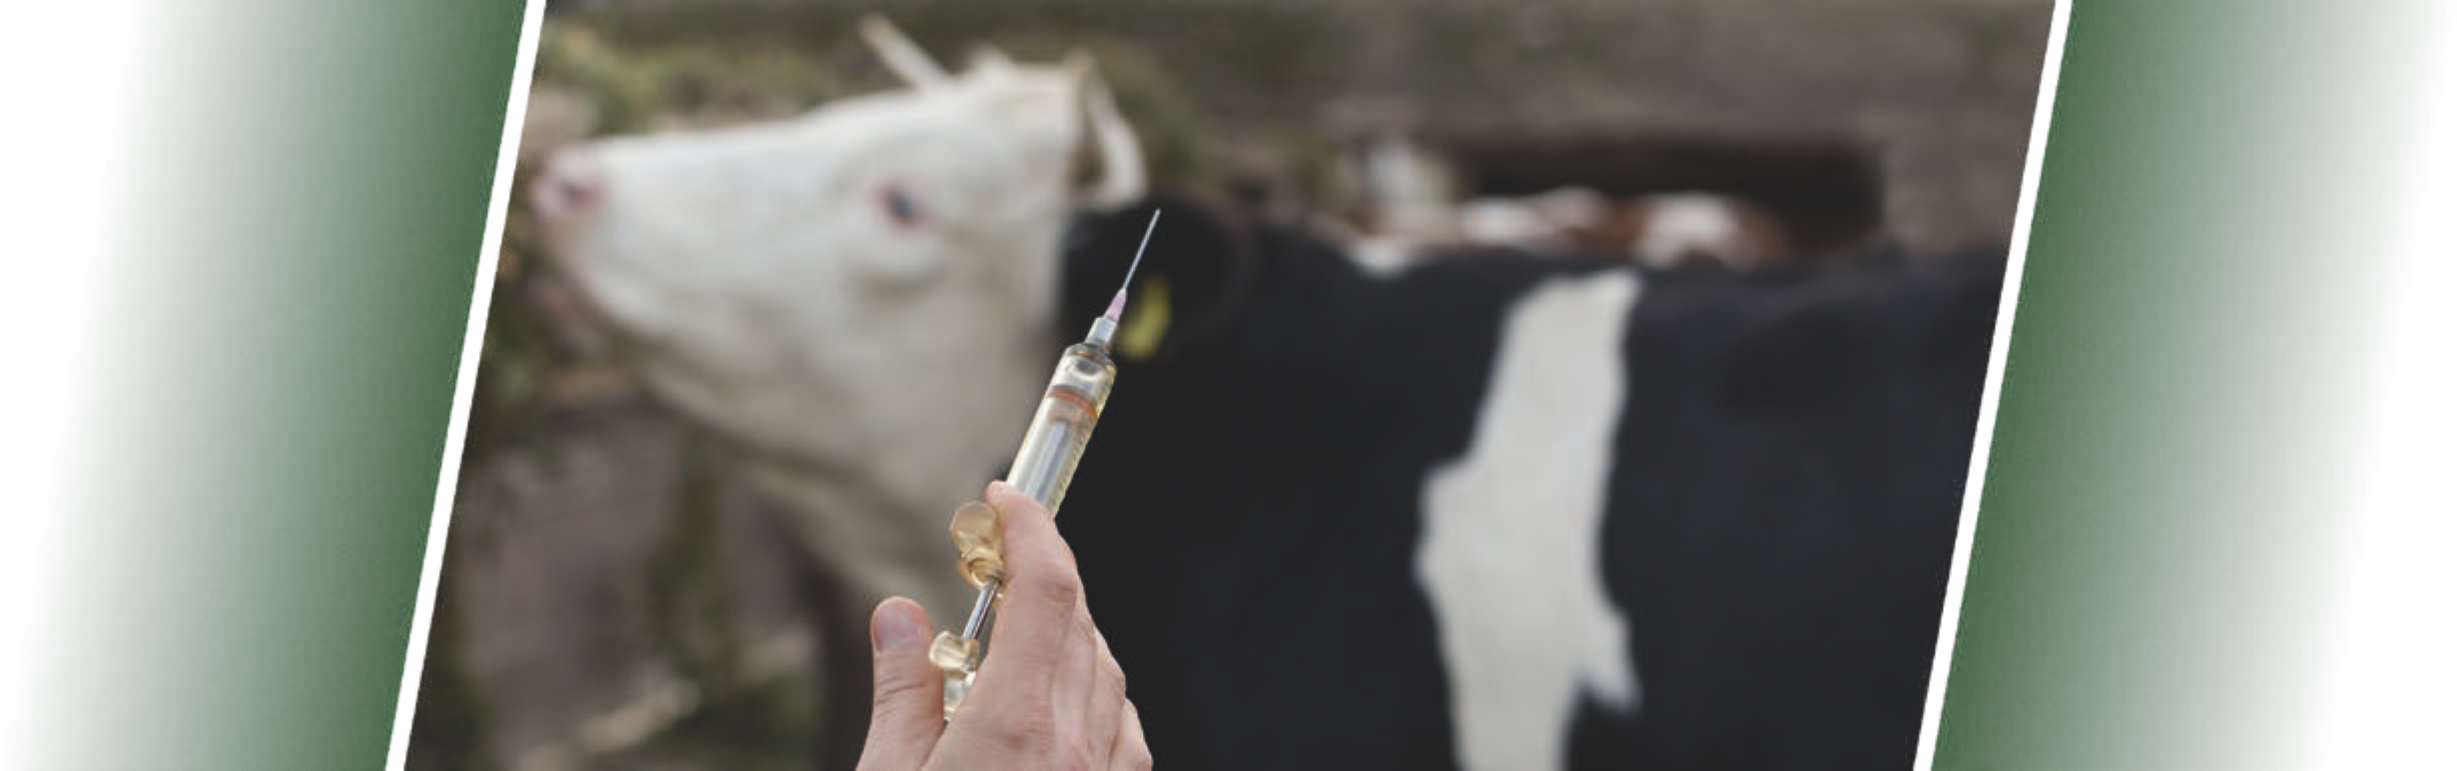 bovistem_bro Каталог ветеринарных препаратов для крупного рогатого скота